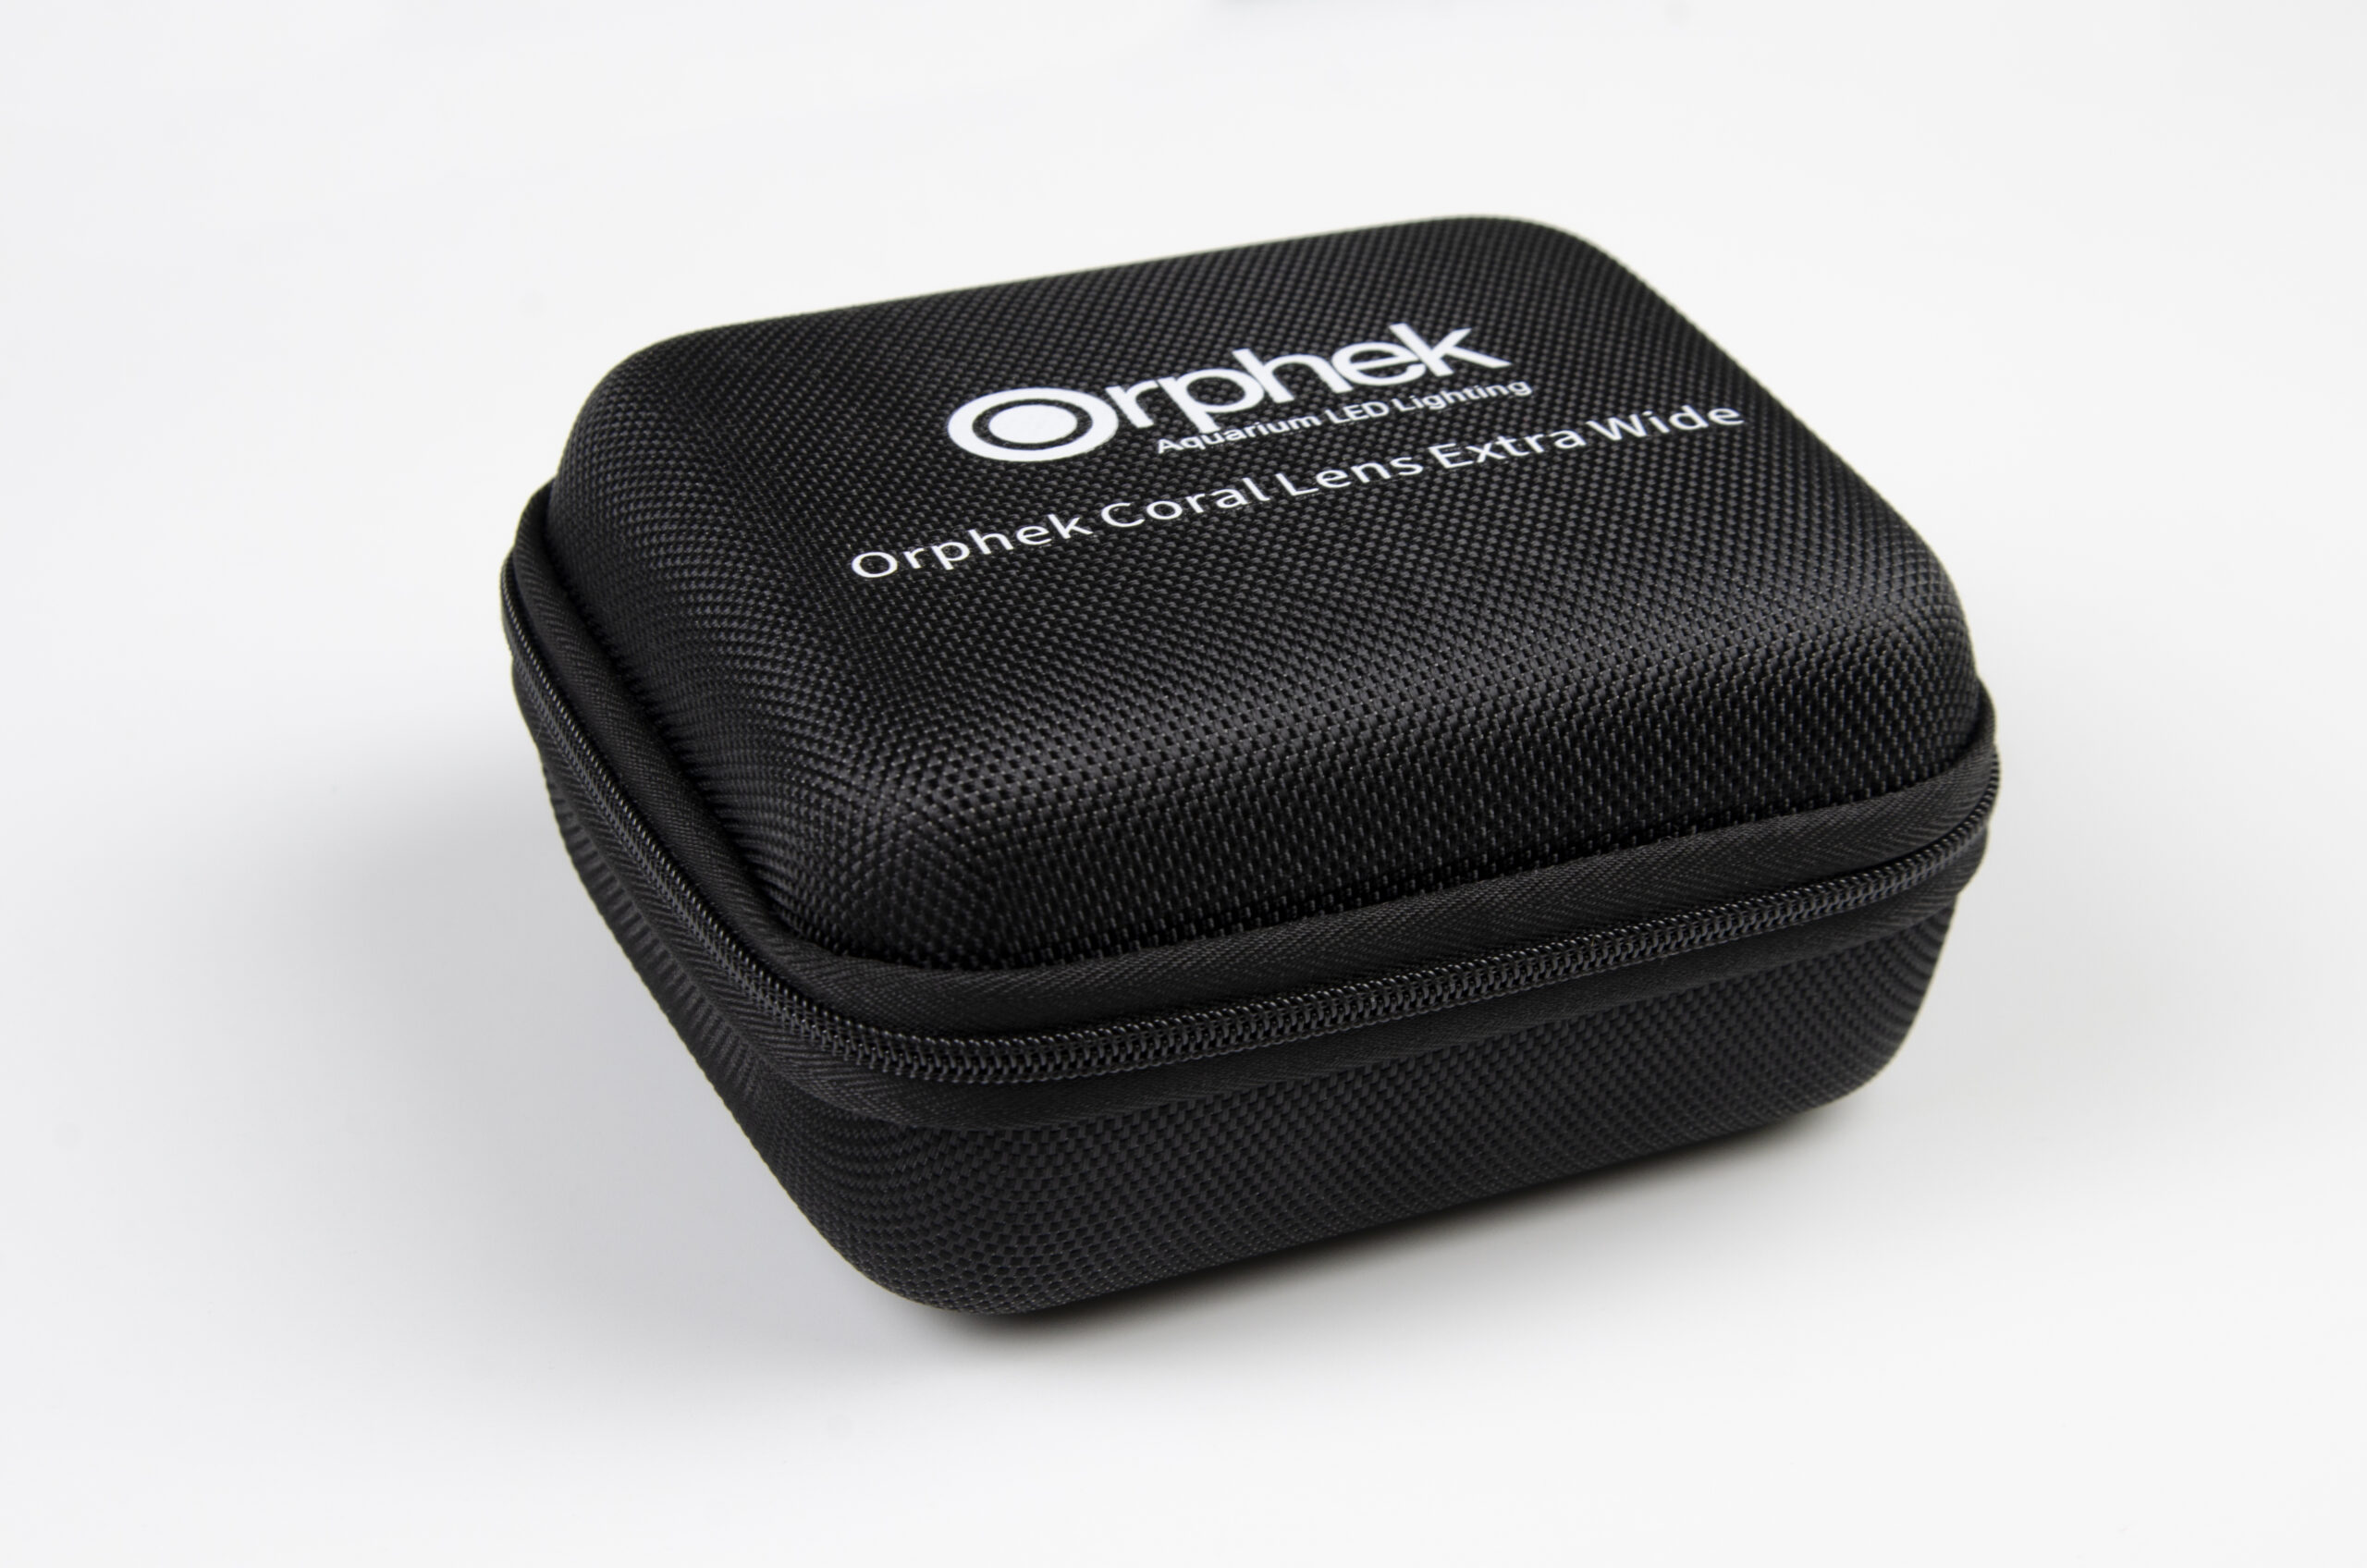 le meilleur kit de lentilles corail pour smartphones